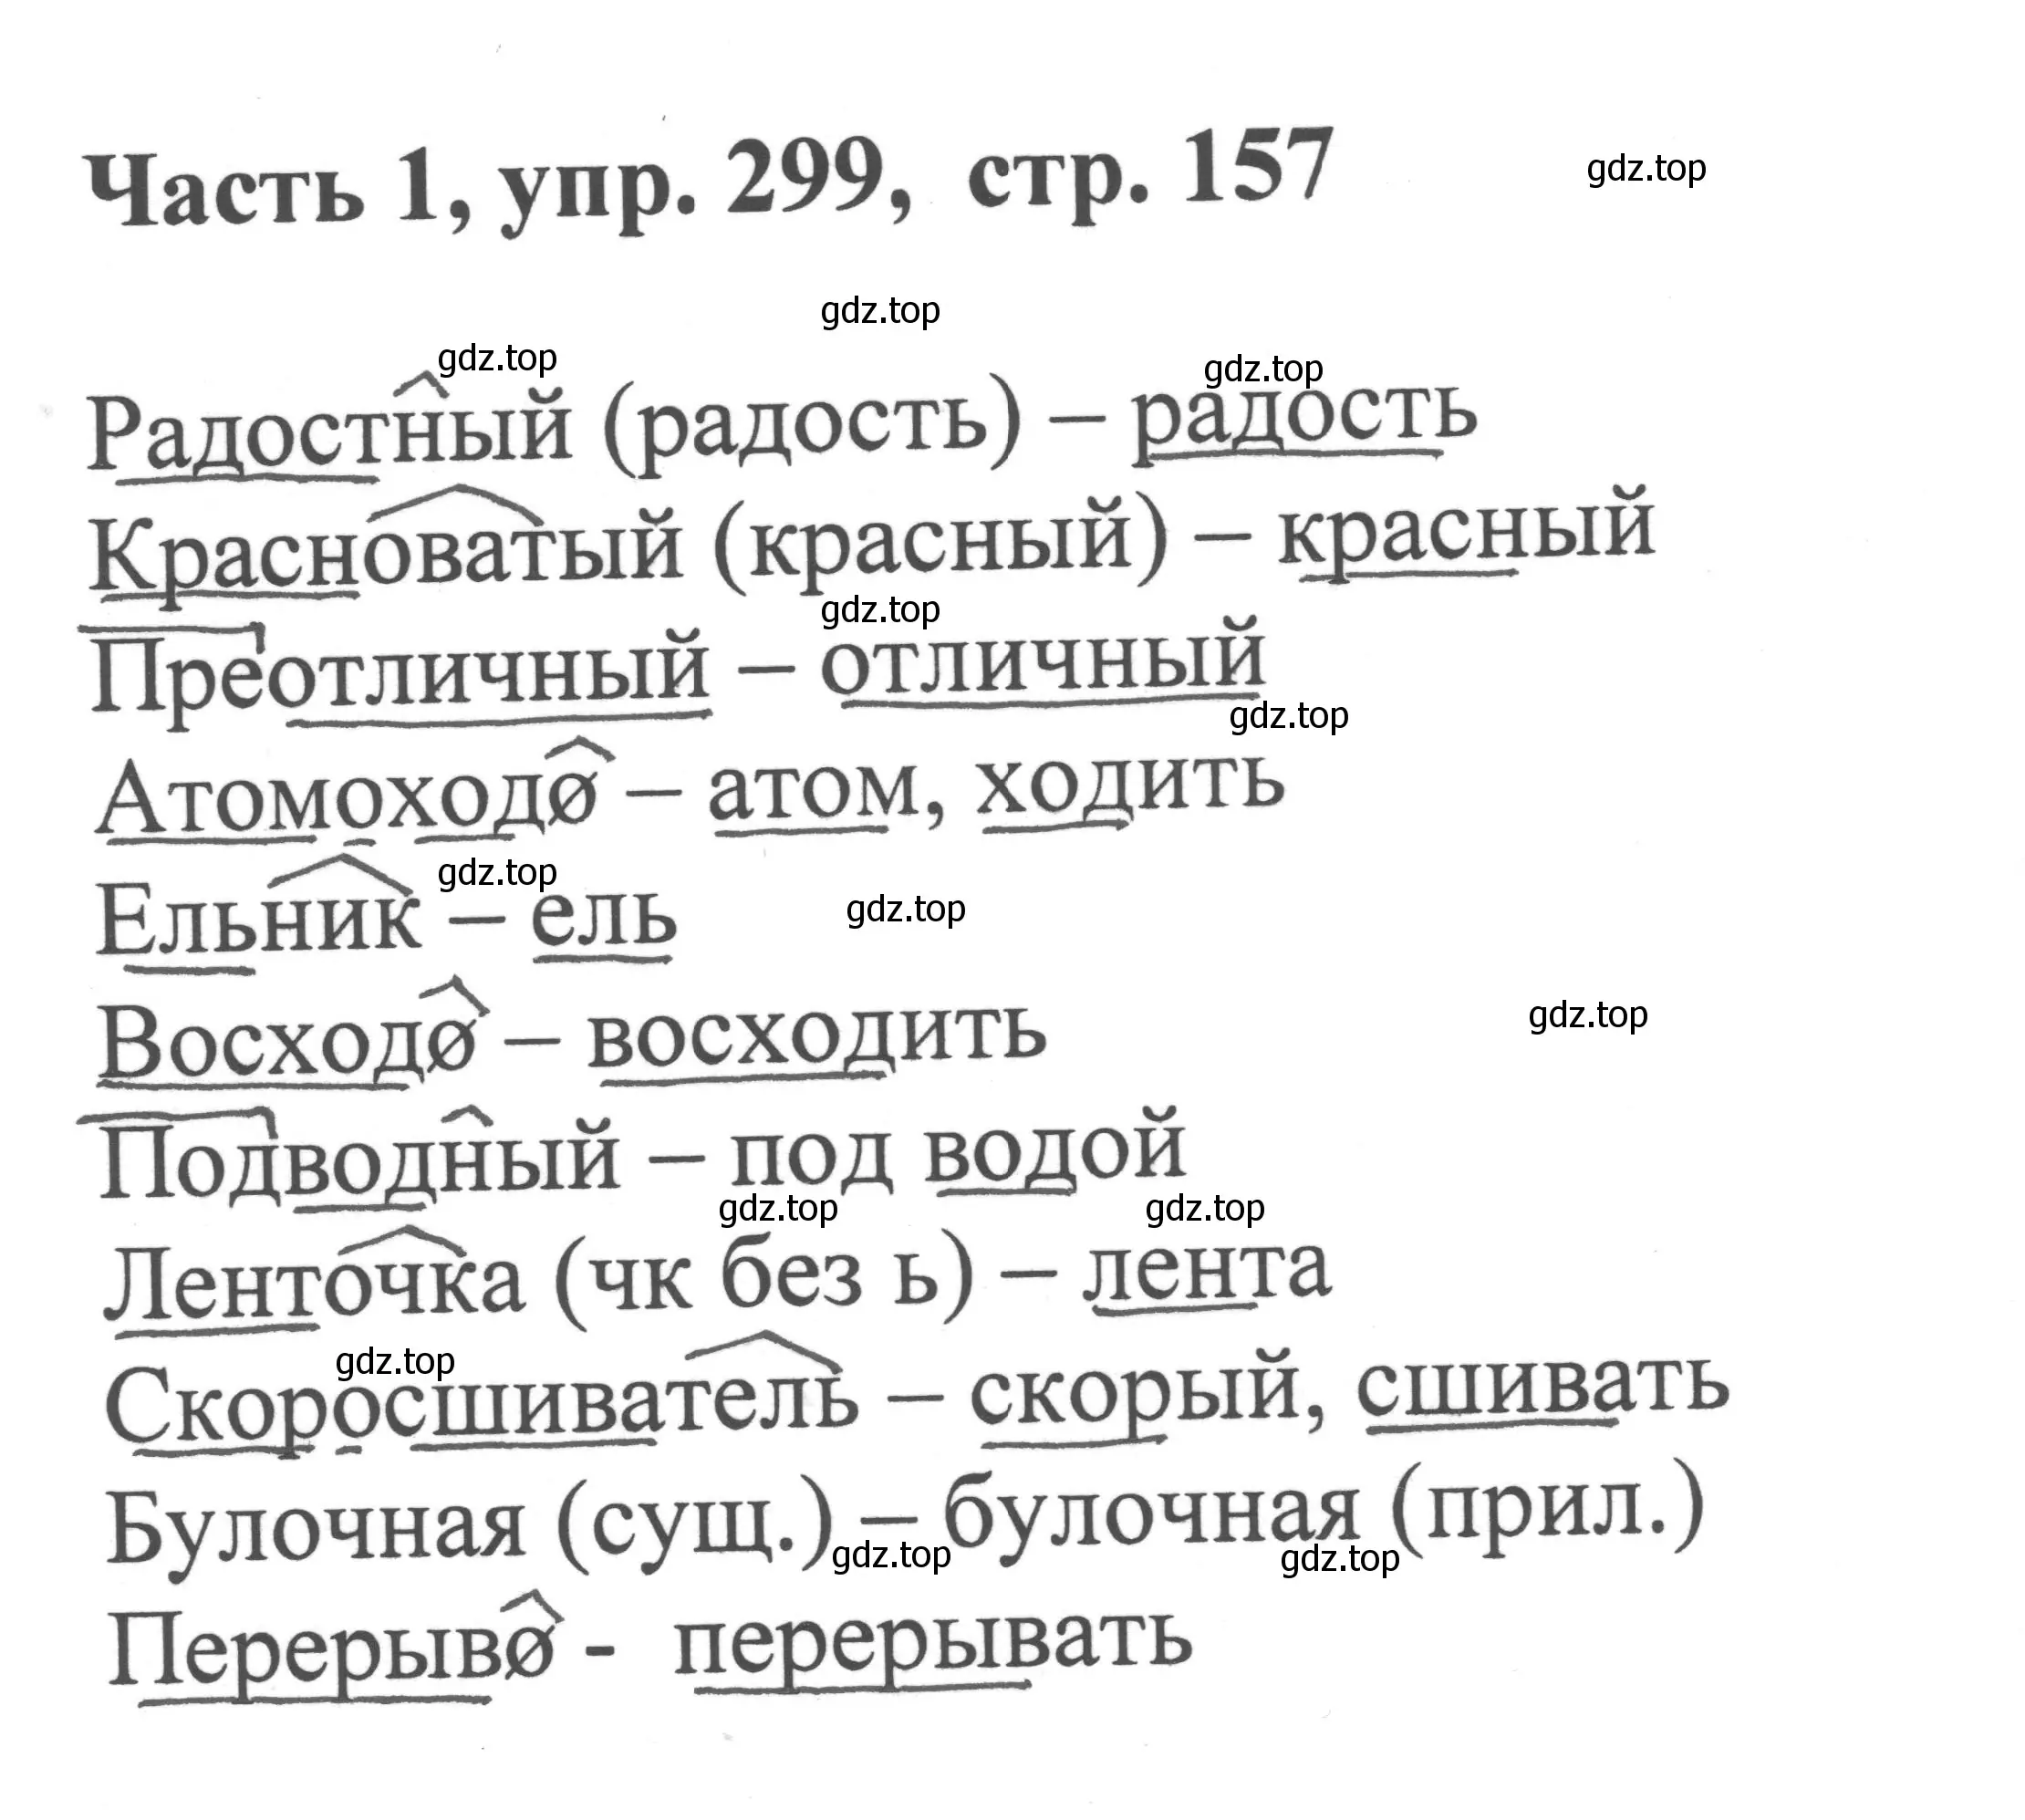 Решение номер 299 (страница 157) гдз по русскому языку 6 класс Баранов, Ладыженская, учебник 1 часть